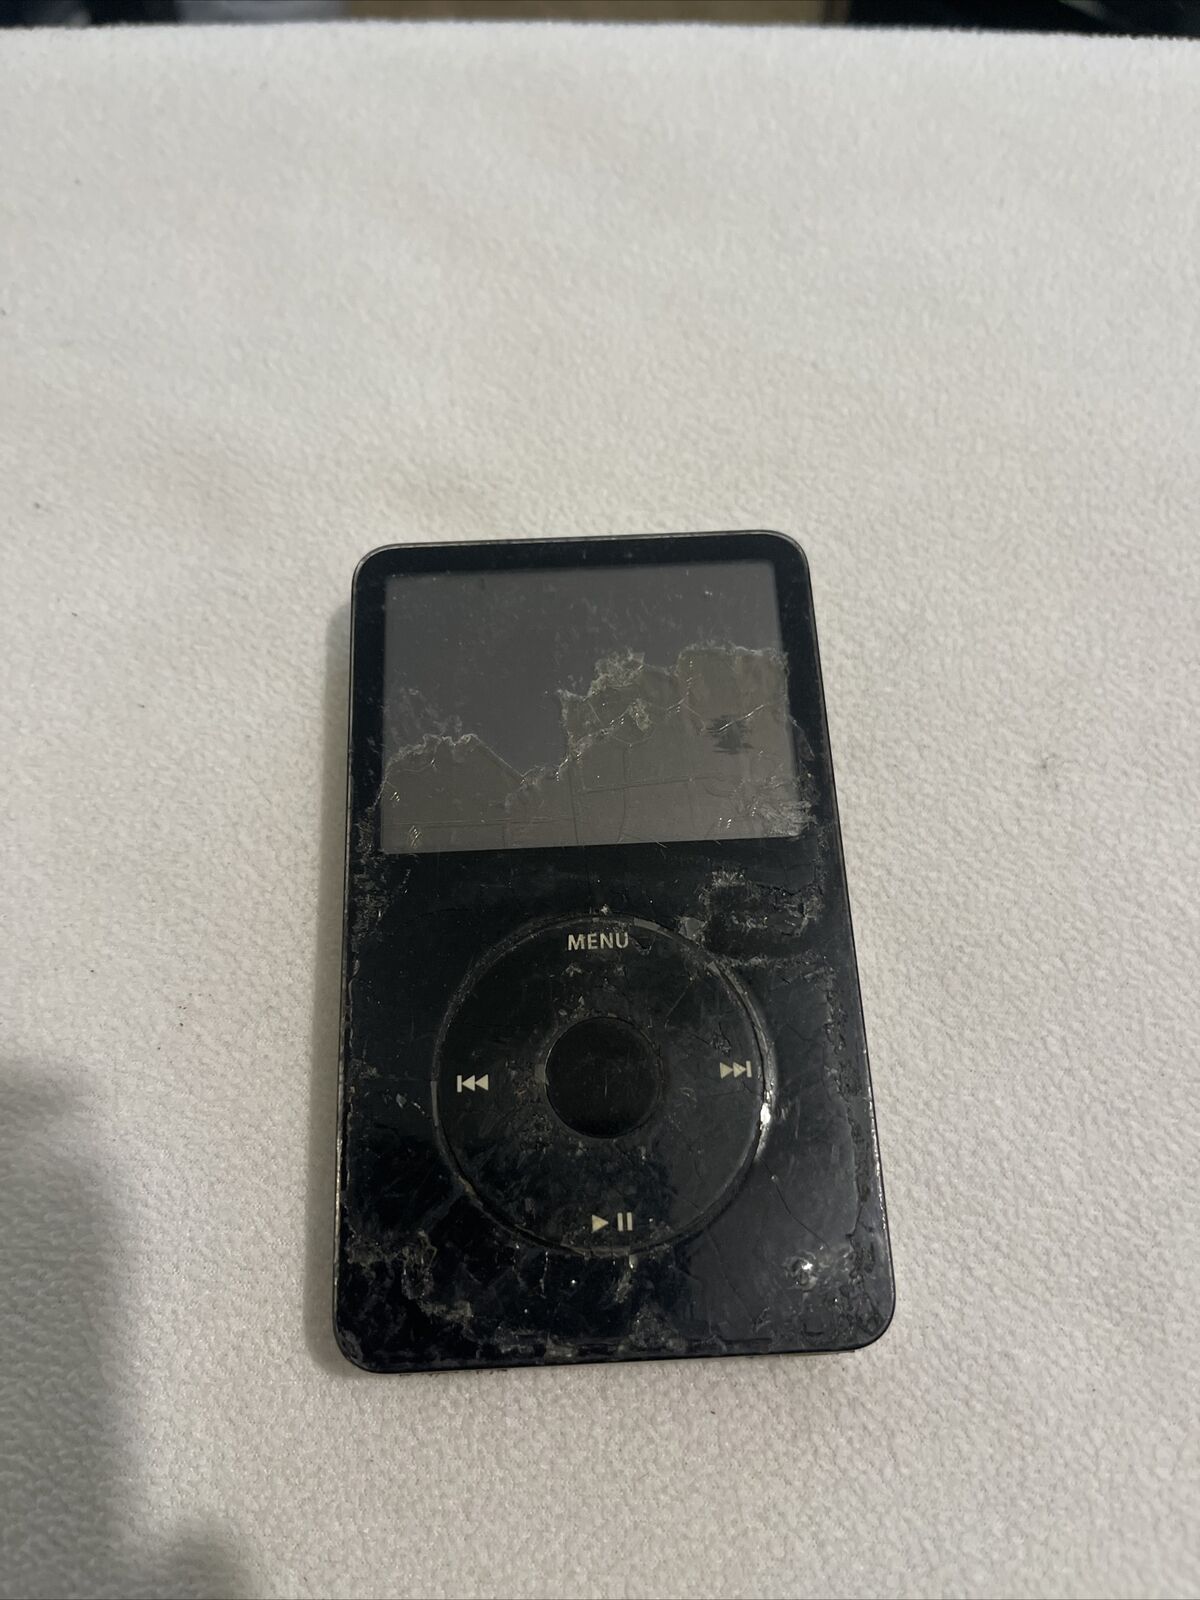 オーディオ機器 ポータブルプレーヤー Apple iPod classic 5th Generation Black (60 GB) for sale online | eBay